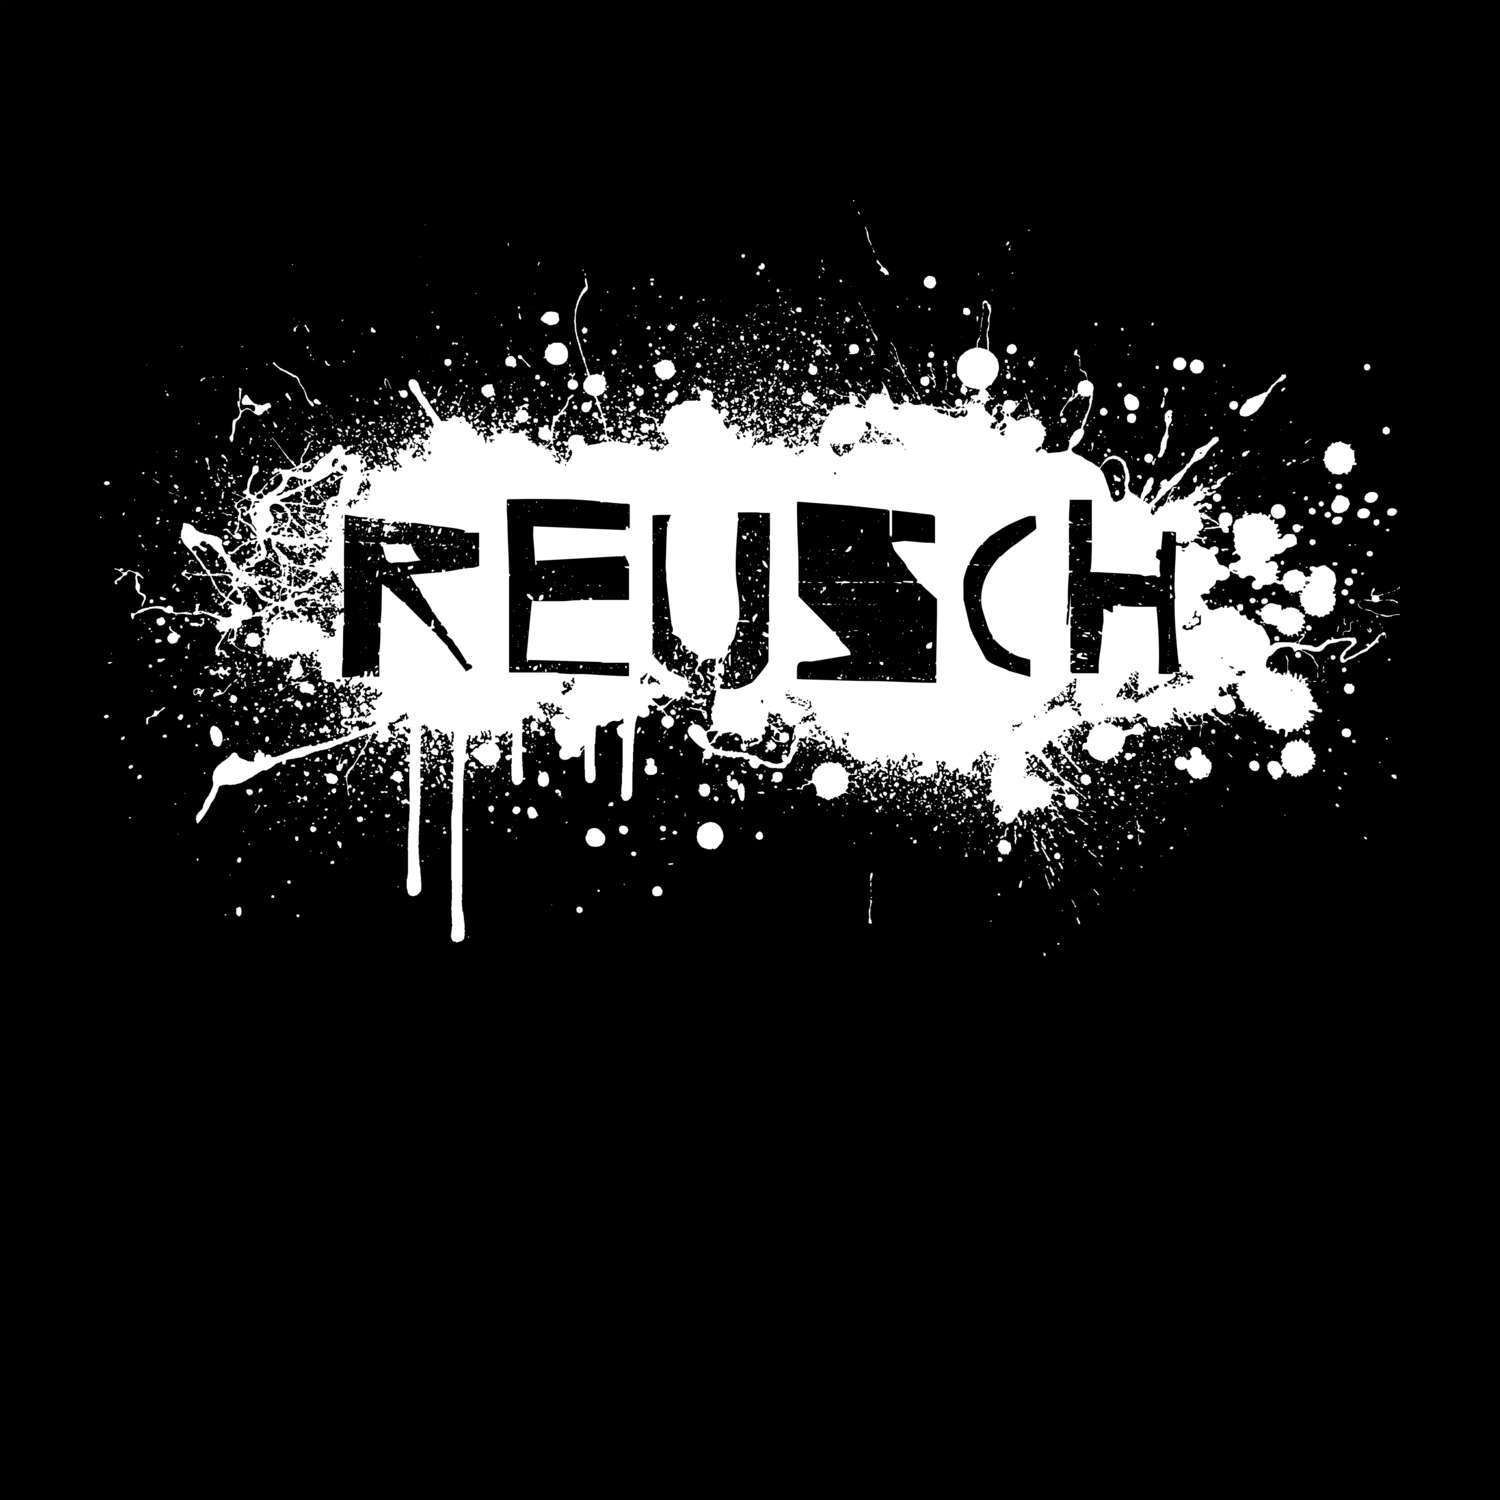 Reusch T-Shirt »Paint Splash Punk«